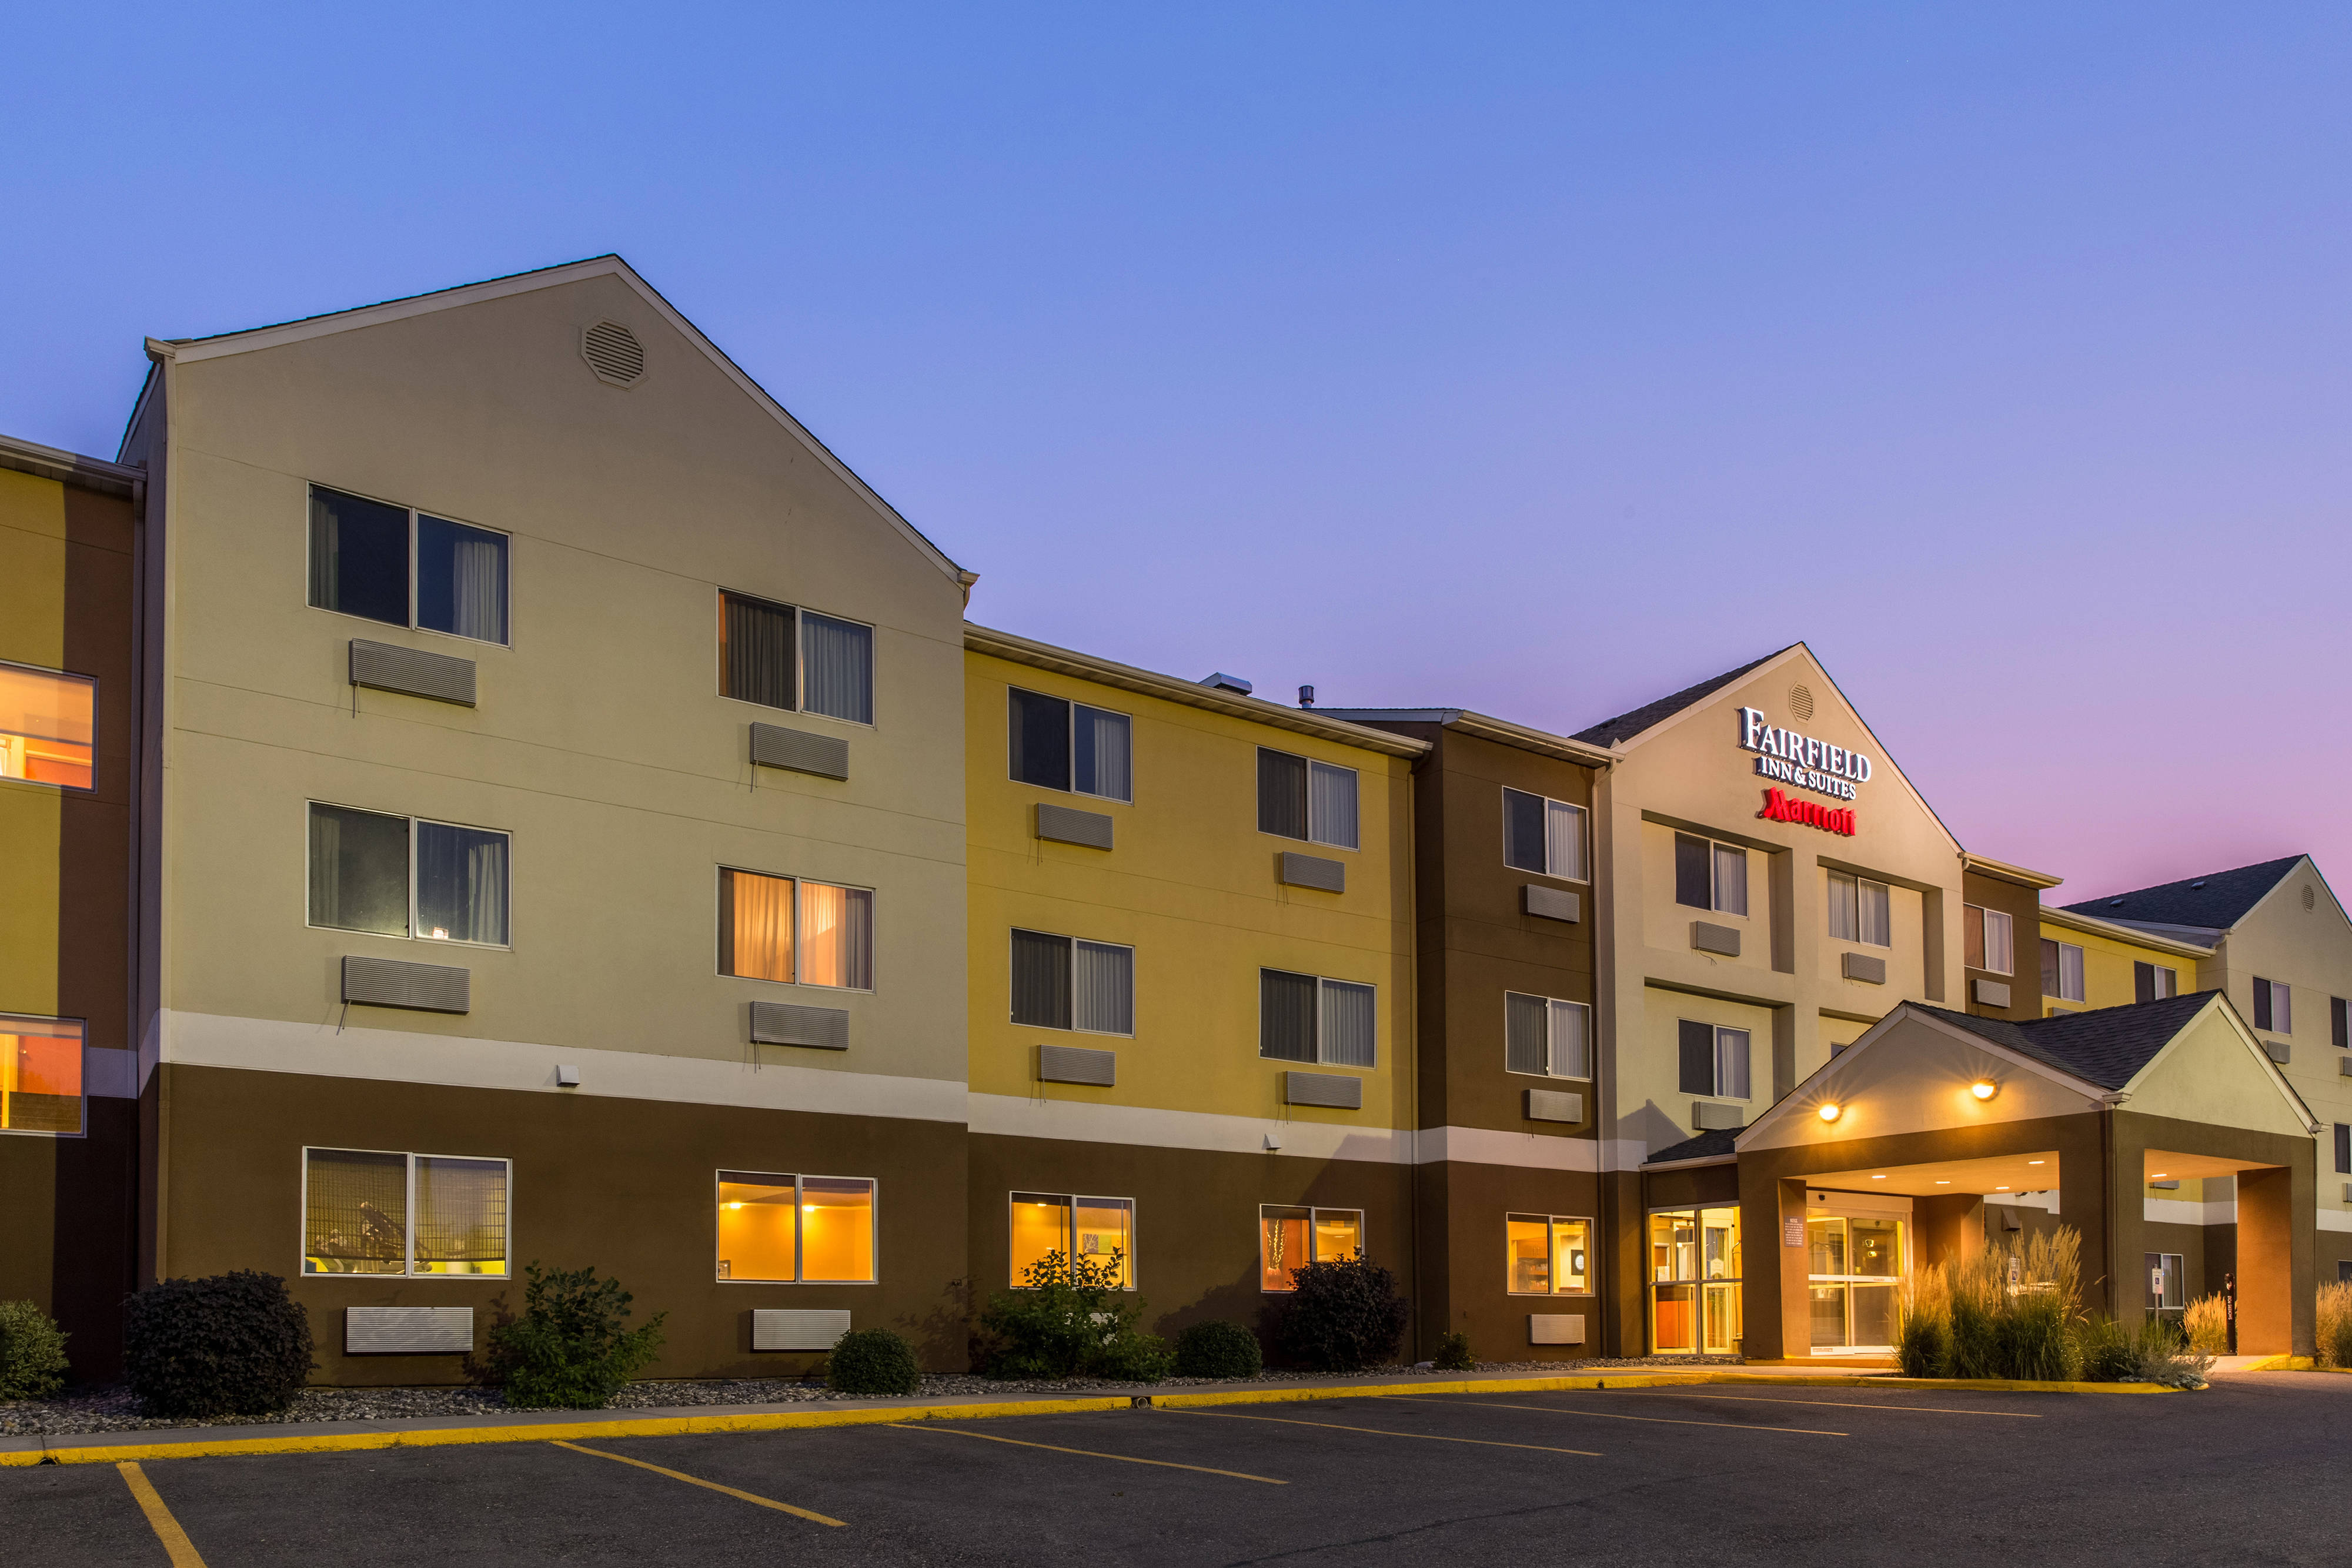 Photo of Fairfield Inn & Suites by Marriott Billings, Billings, MT